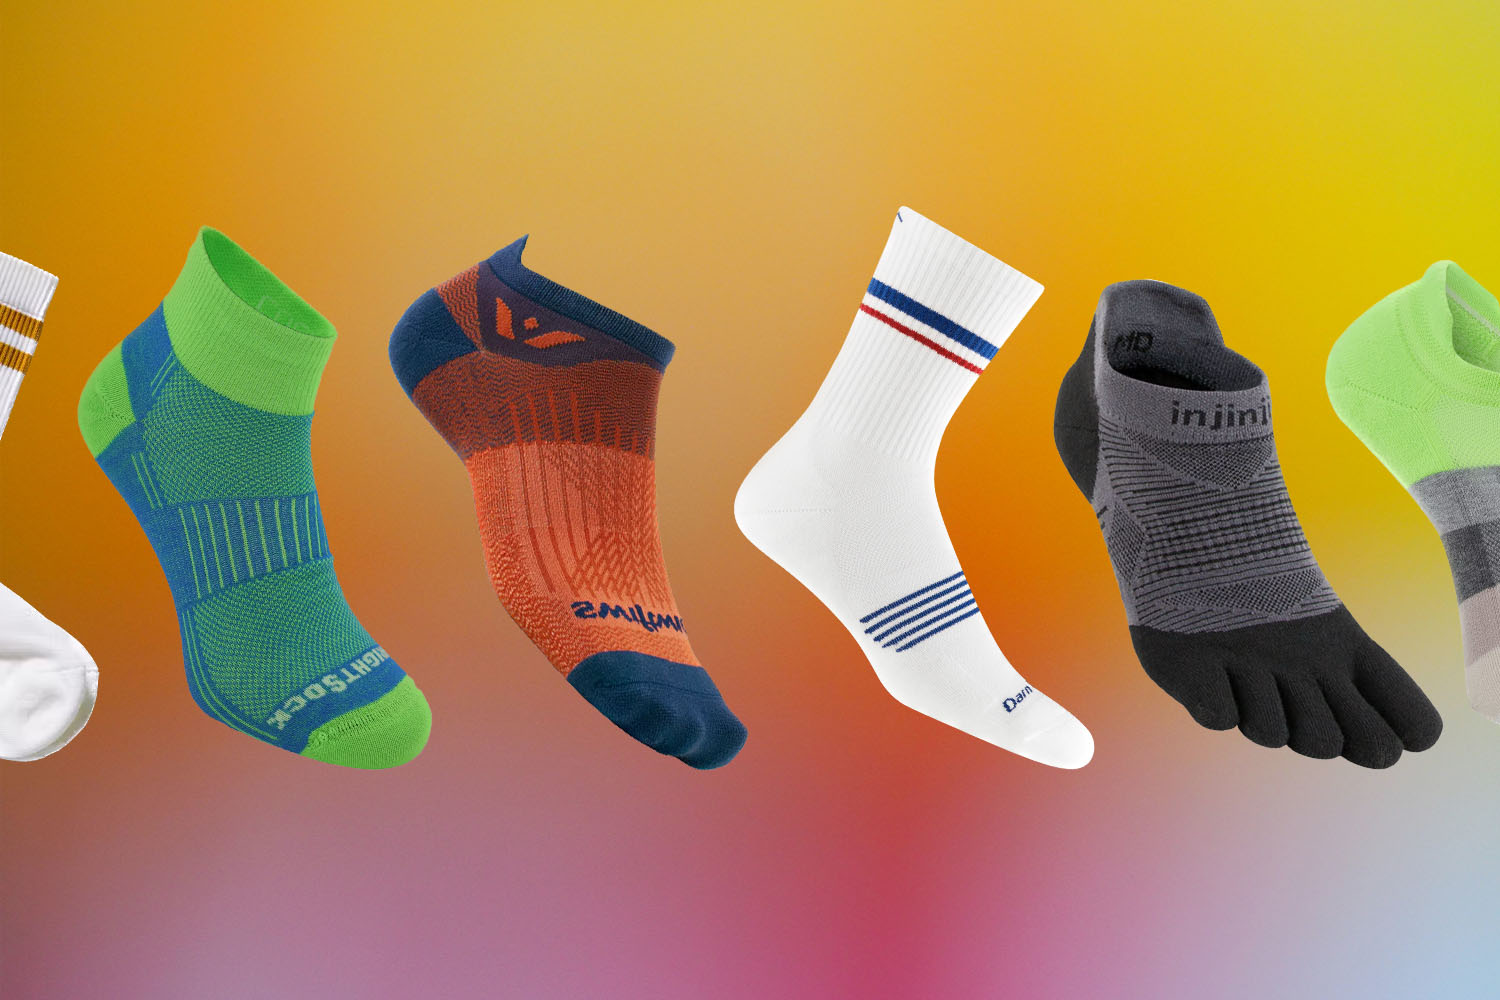 Hero Pro, Best Running Socks For Men, Workout Socks